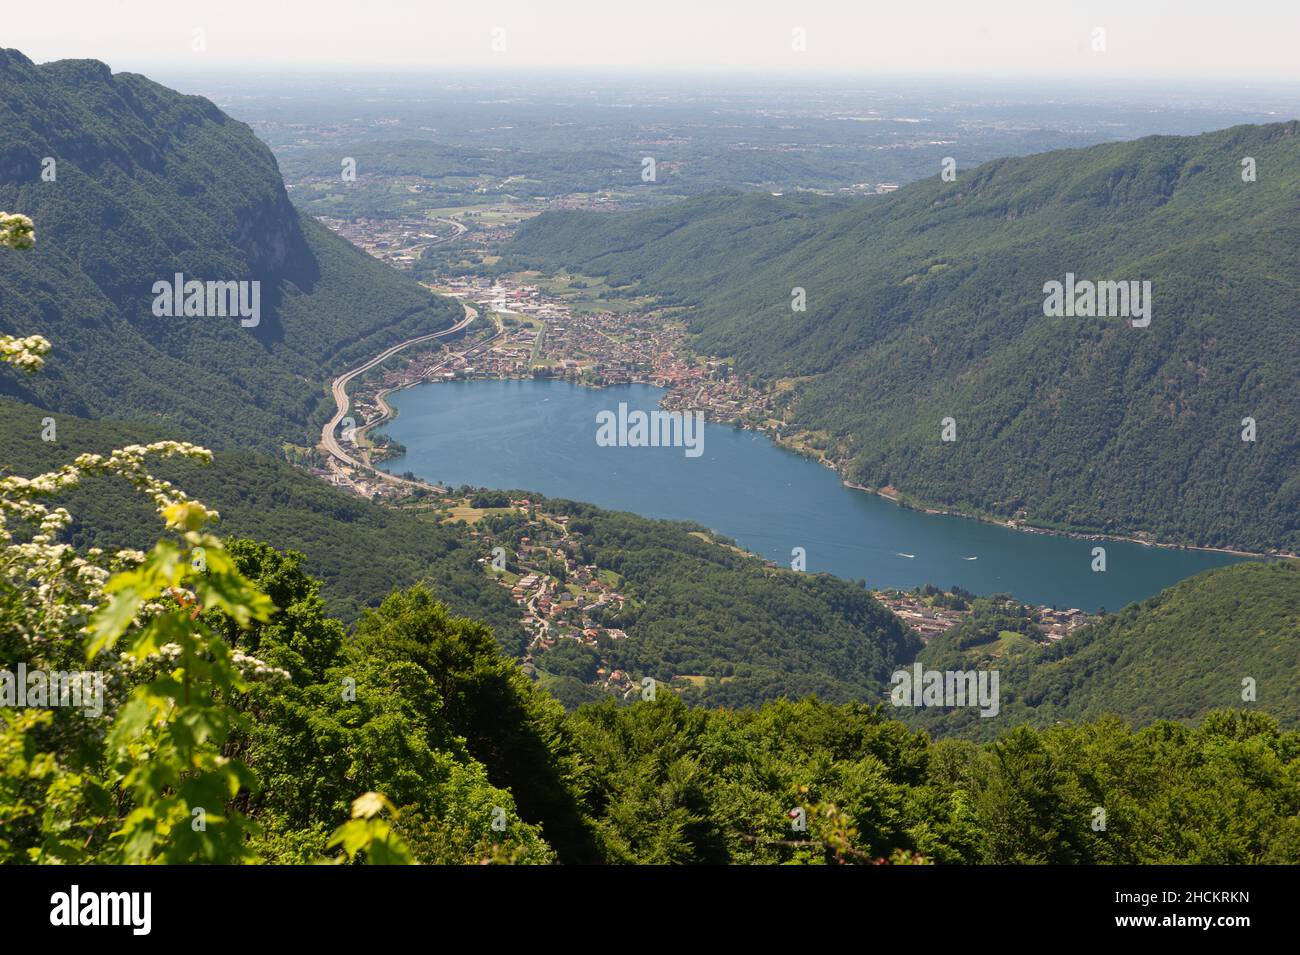 Europe, Italie, Como Lanzo d'Intelvi, Val d'Intelvi, vue de Sighignola (Italie) sur le lac de Lugano (Suisse).En bas à droite Porto Ceresio.Meli Banque D'Images